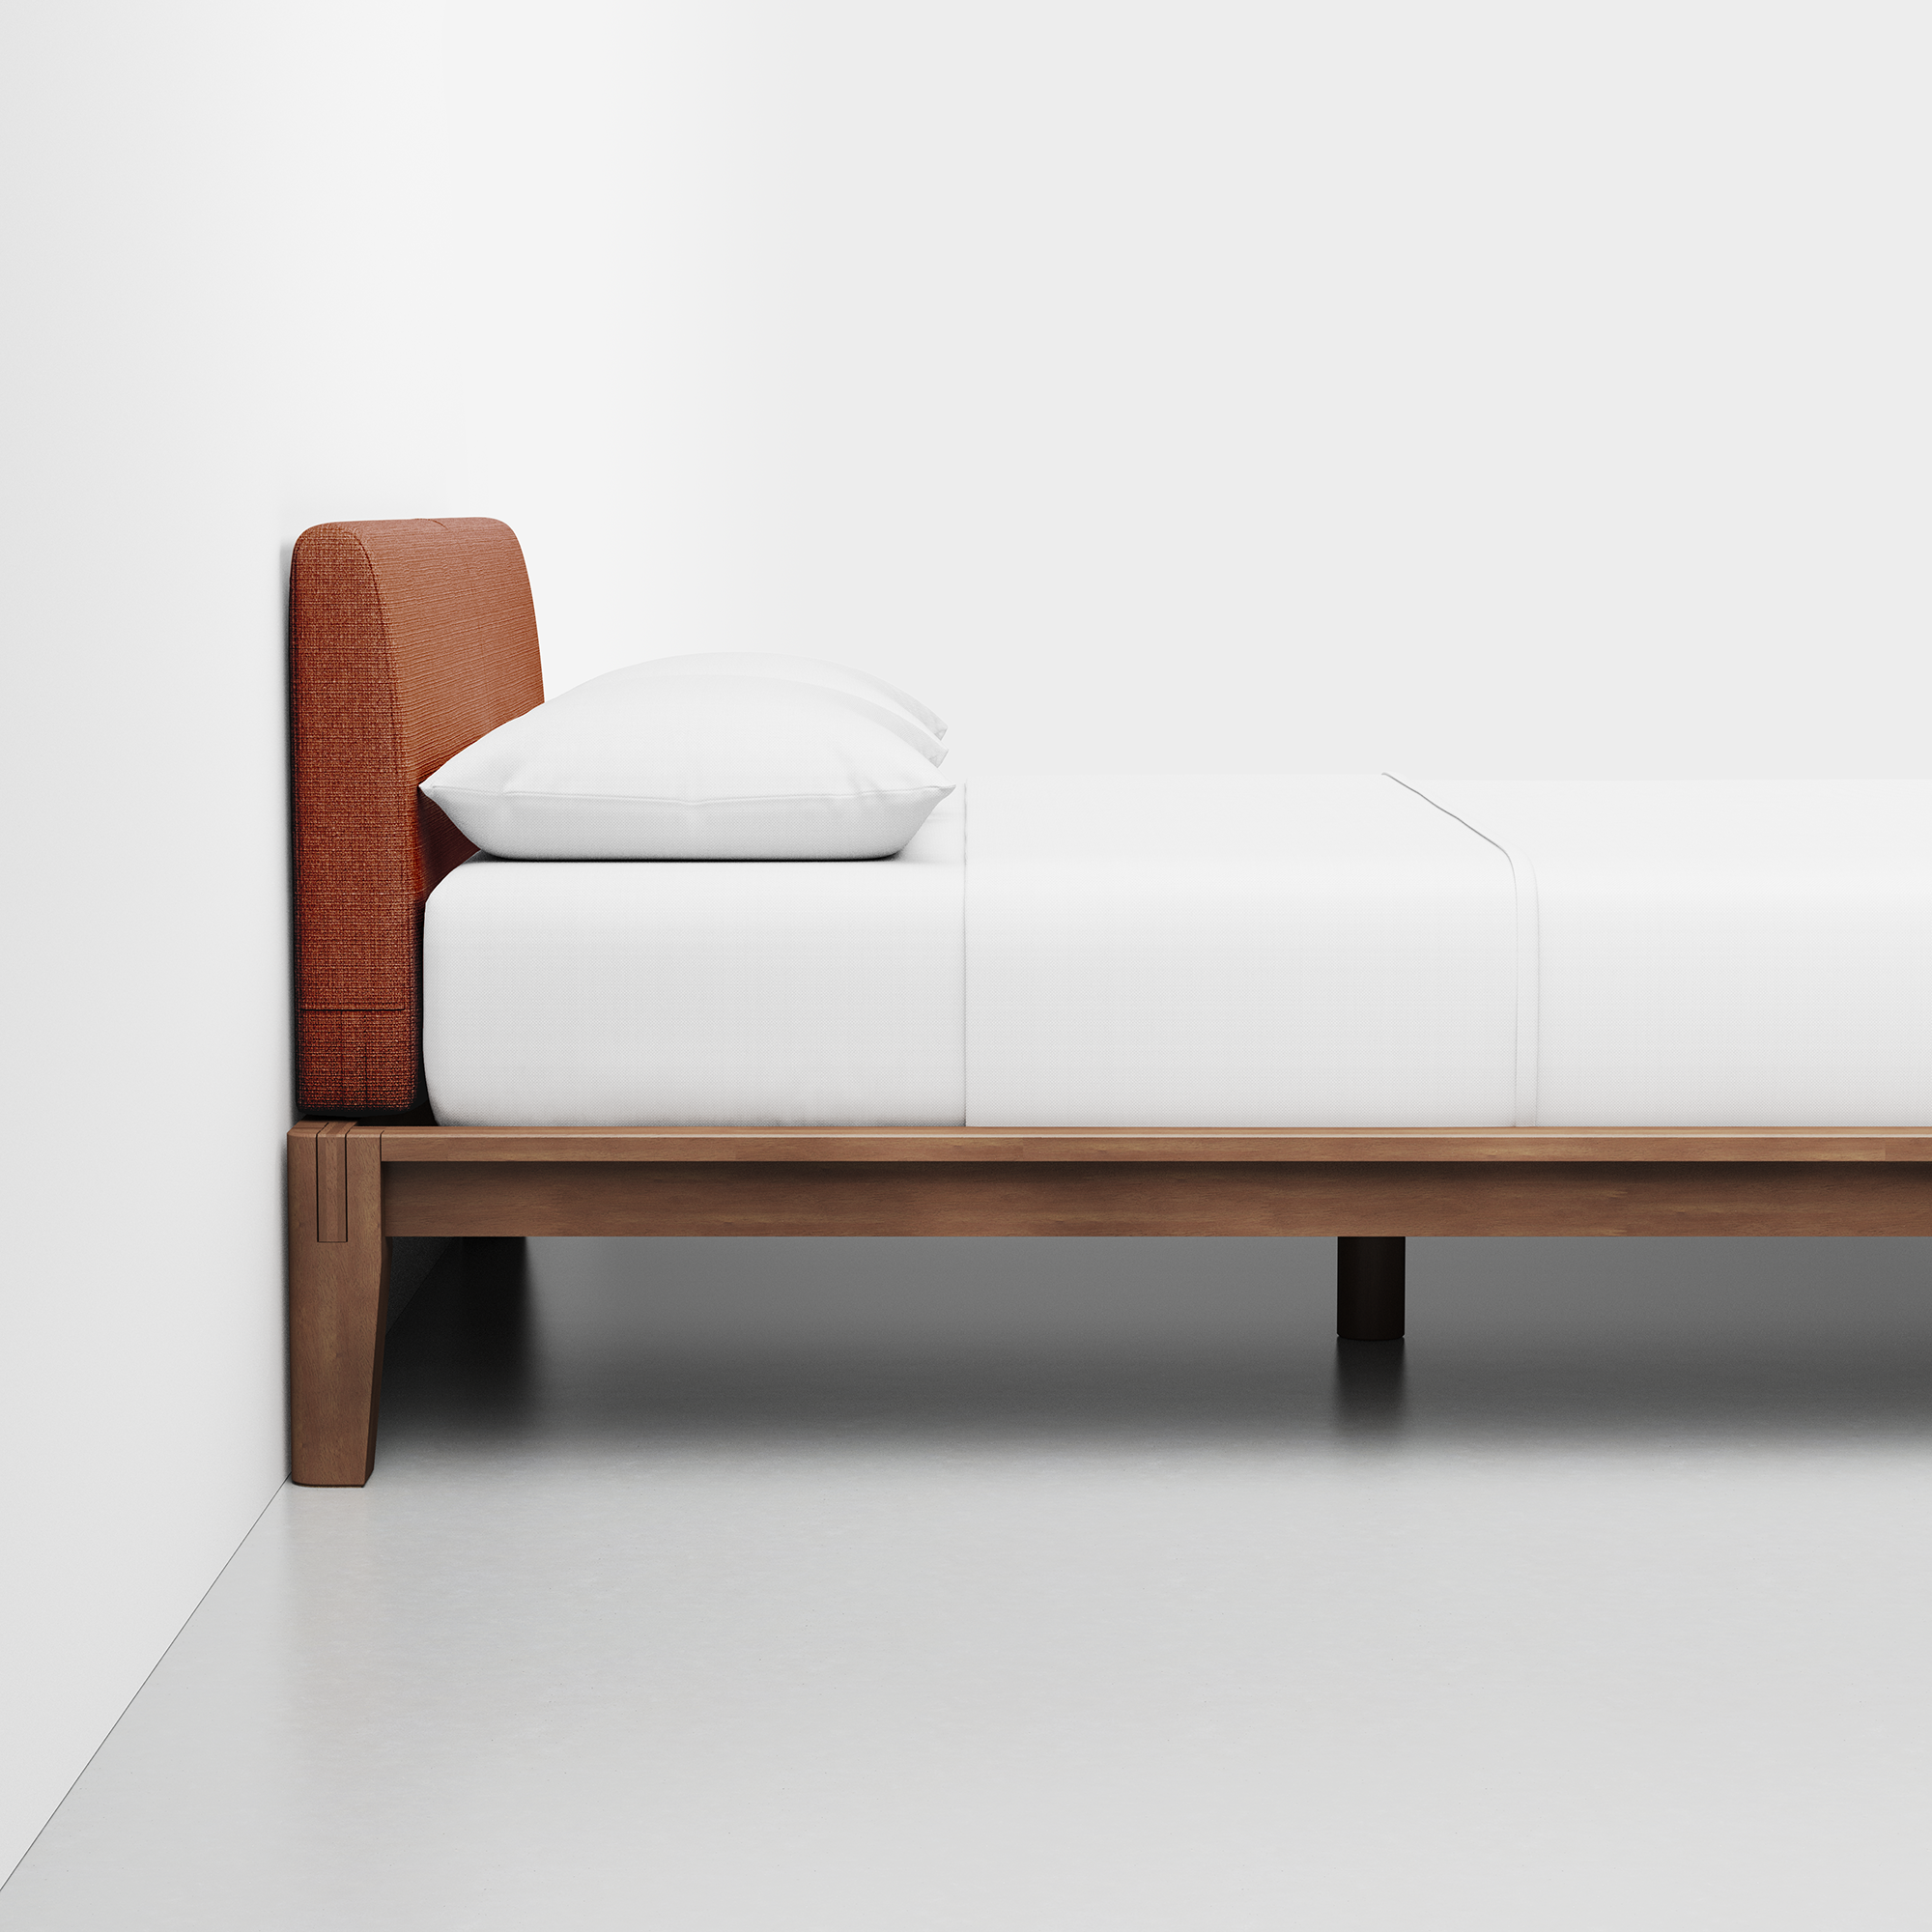 The Bed (Walnut / Terracotta) - Render - Side